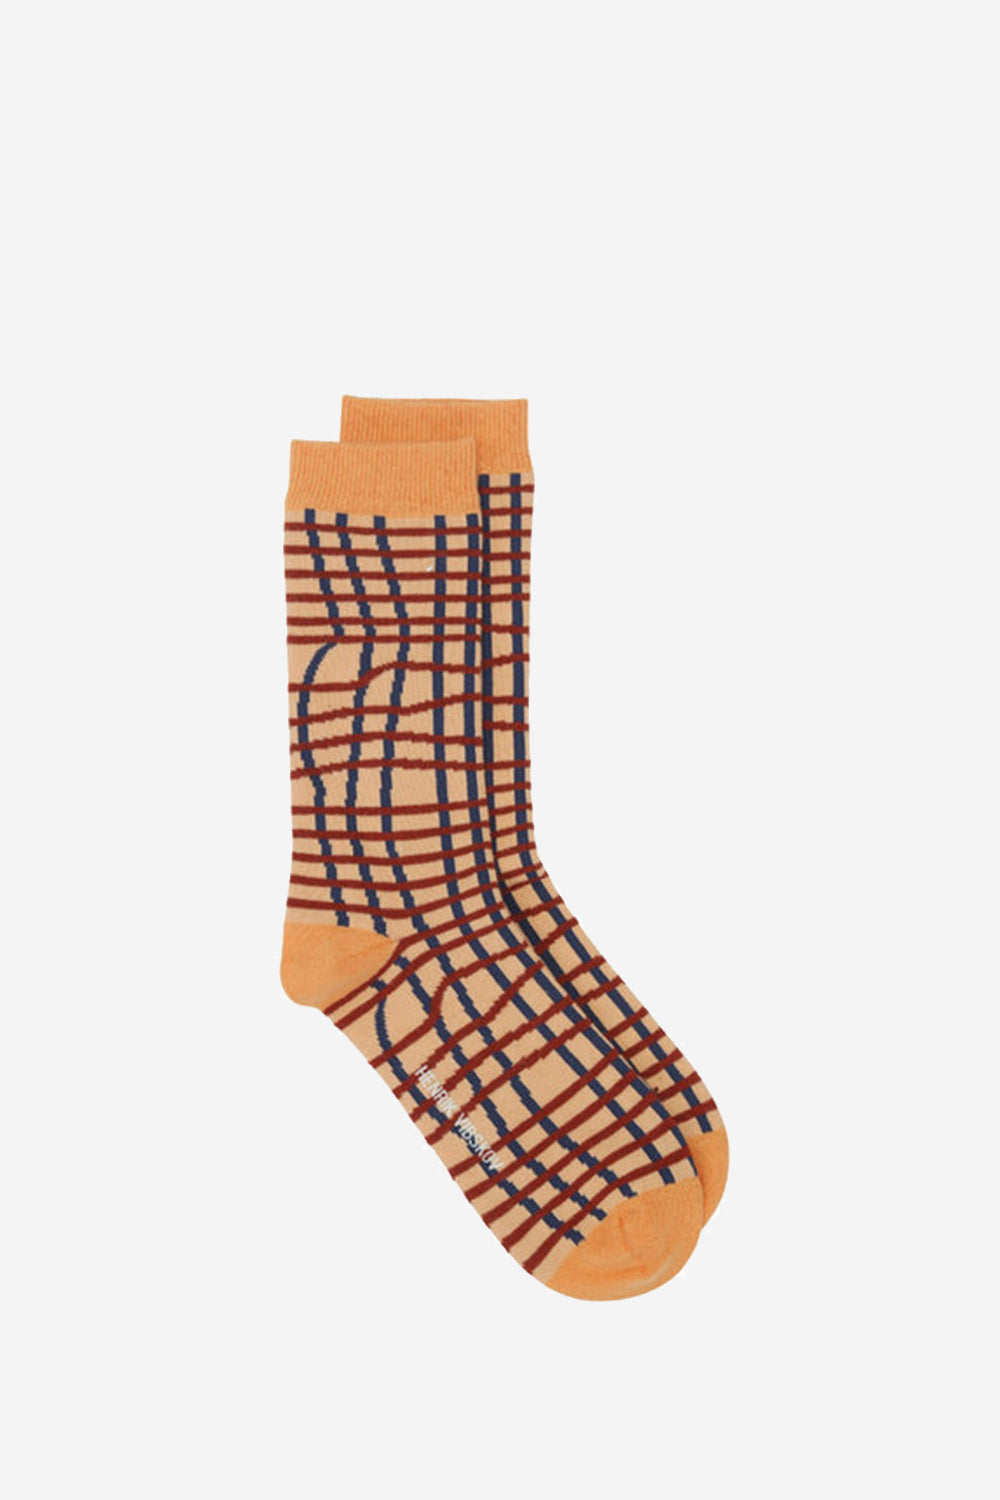 Loose Grid Femme Socks